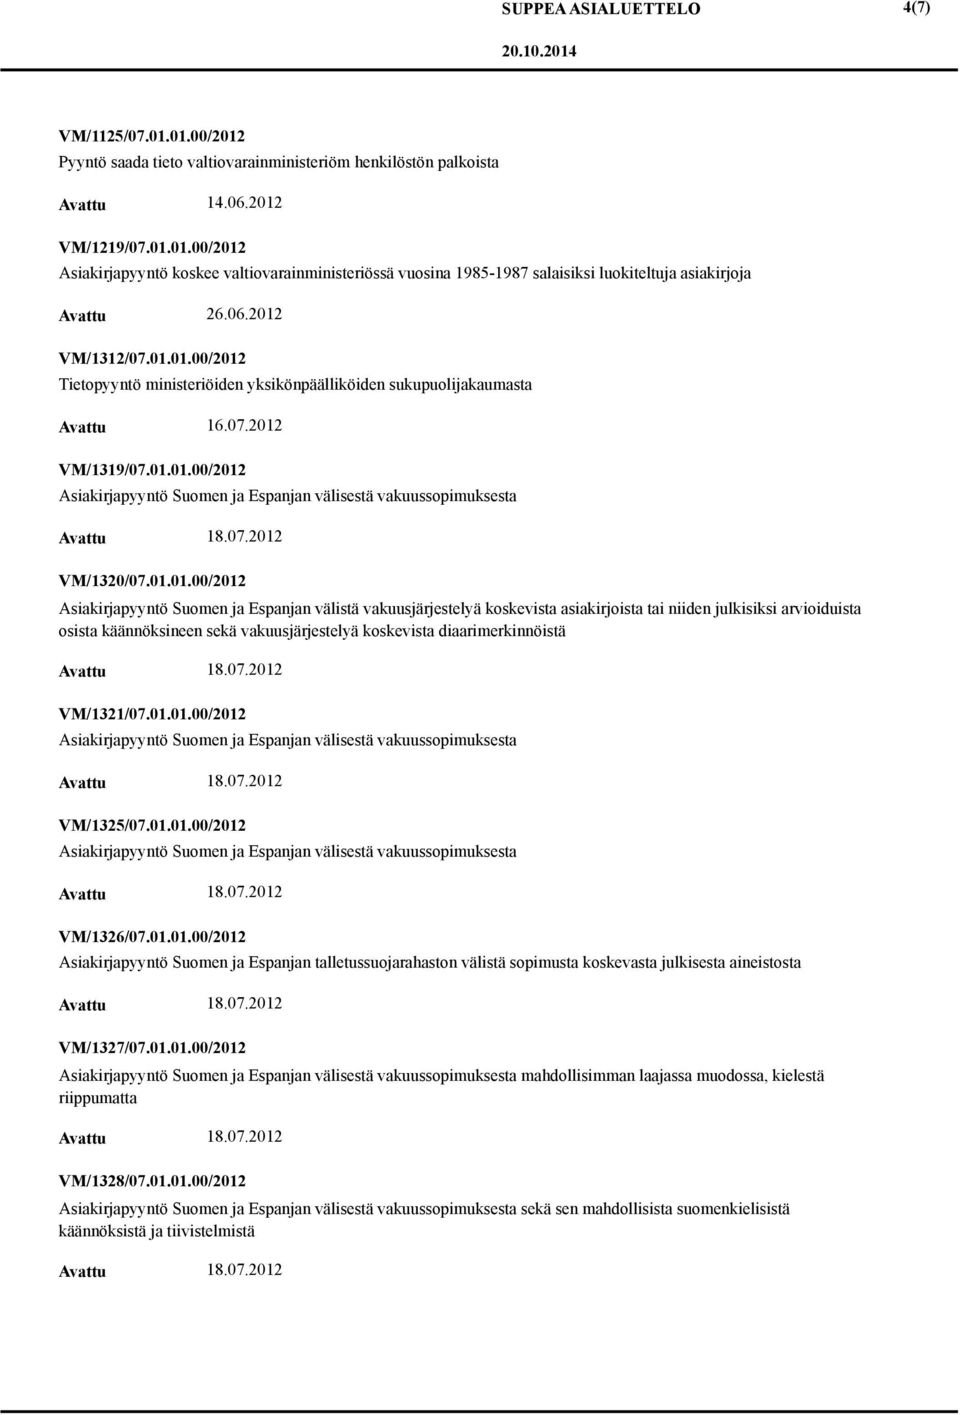 01.01.00/2012 Asiakirjapyyntö Suomen ja Espanjan välistä vakuusjärjestelyä koskevista asiakirjoista tai niiden julkisiksi arvioiduista osista käännöksineen sekä vakuusjärjestelyä koskevista